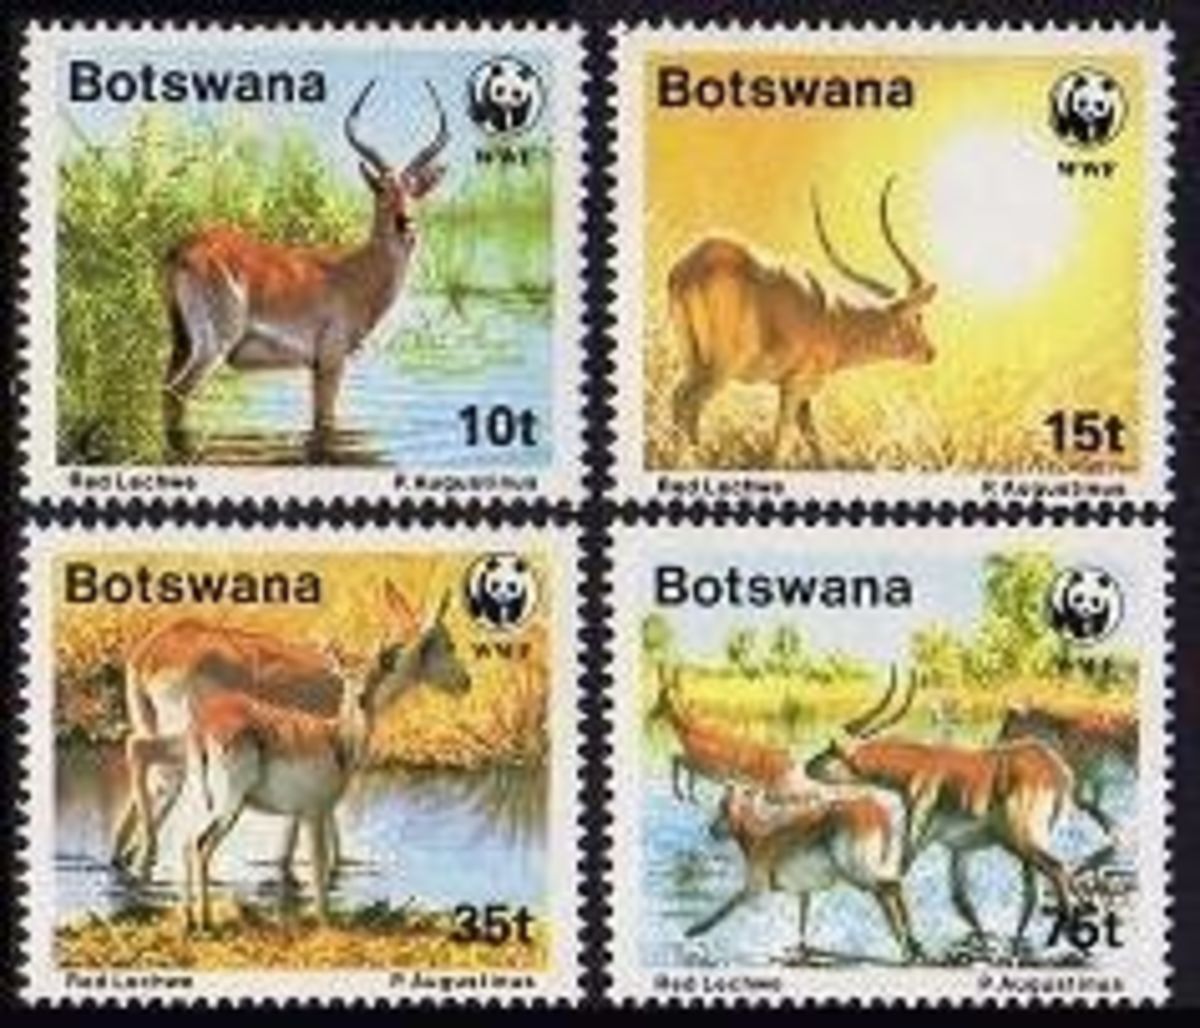 Botswana post